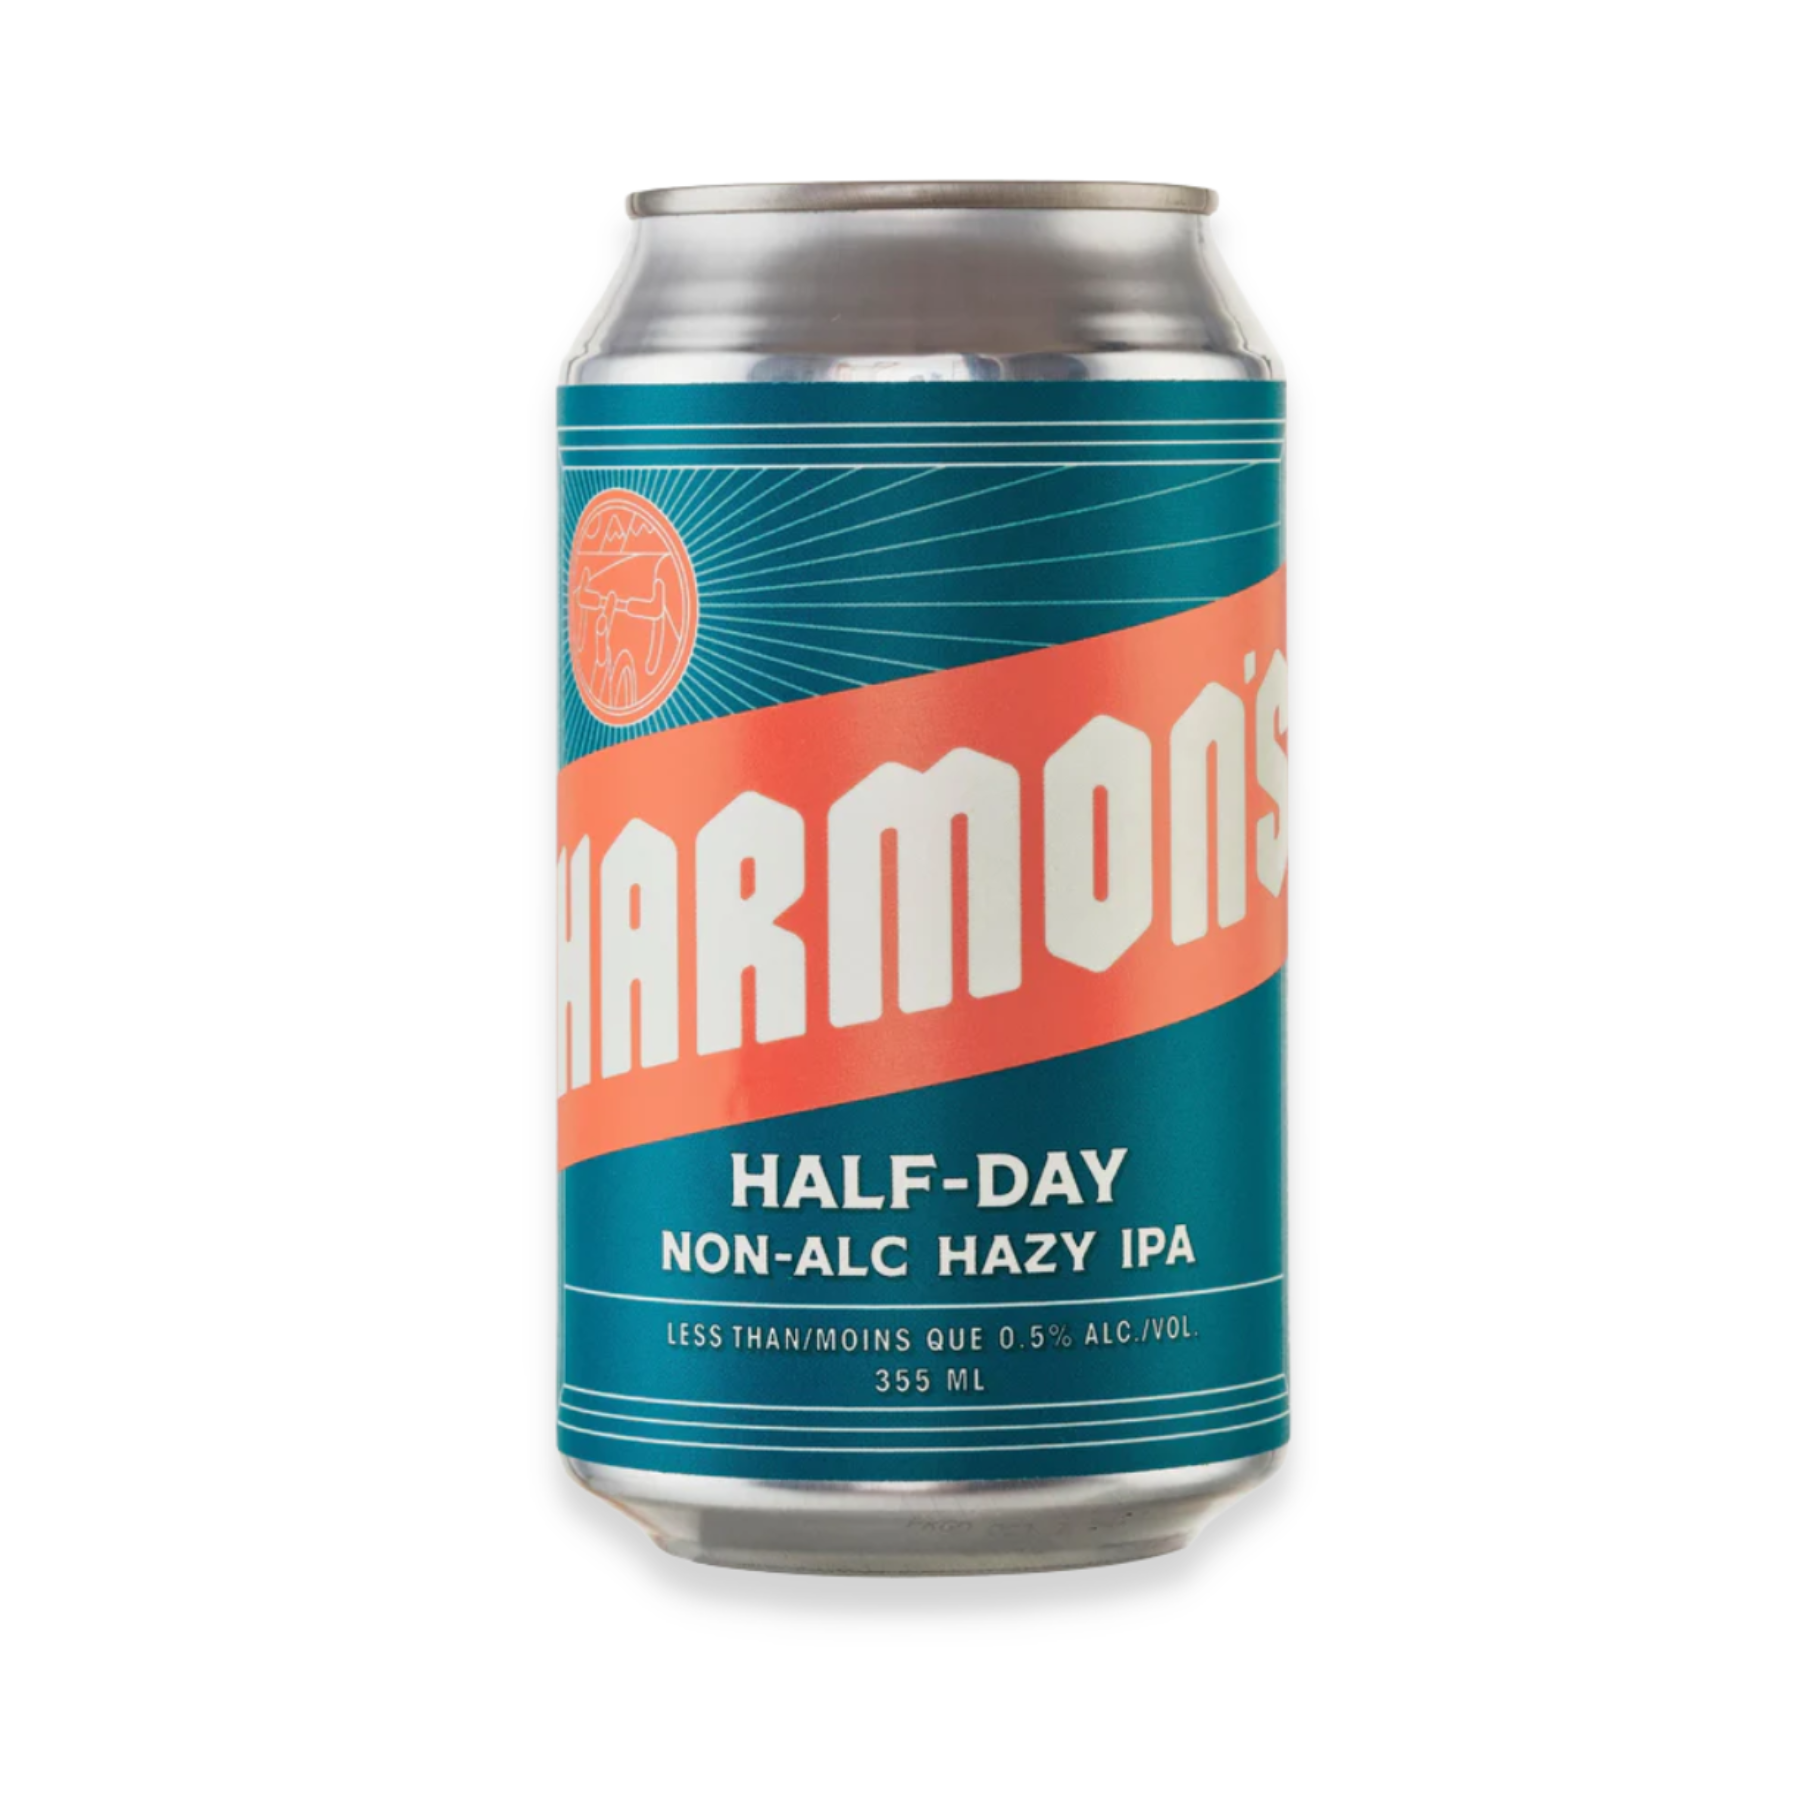 Harmon's Half Day Non-Alcoholic Hazy IPA